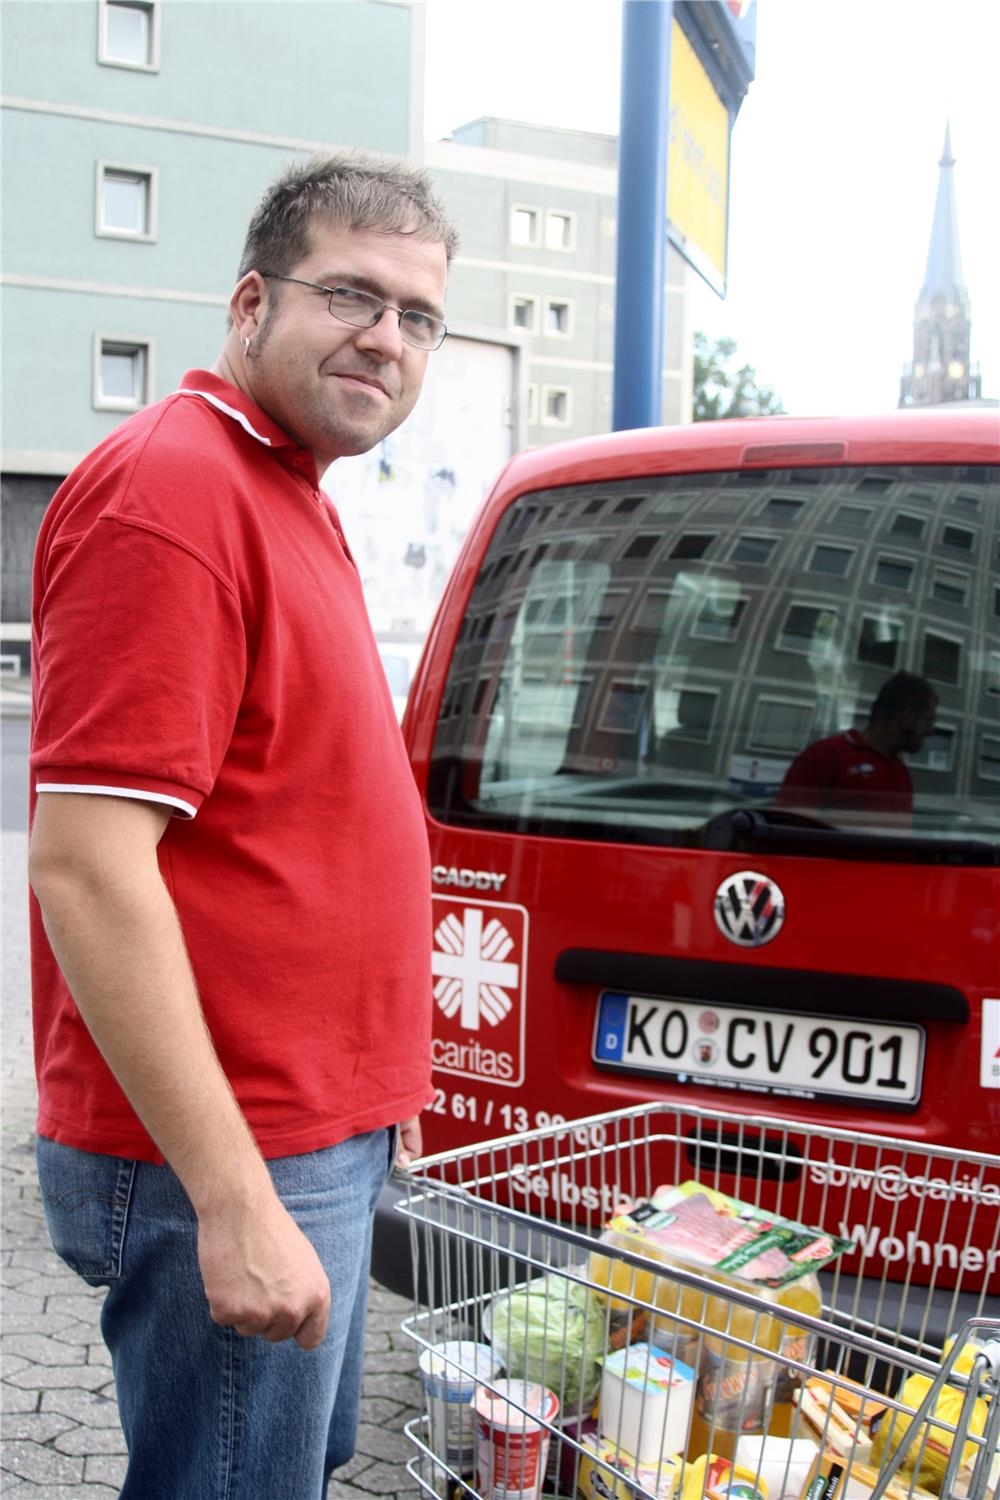 Mann mit vollem Einkaufswagen vor Caritas-Wagen (Foto: Caritasverband Koblenz)